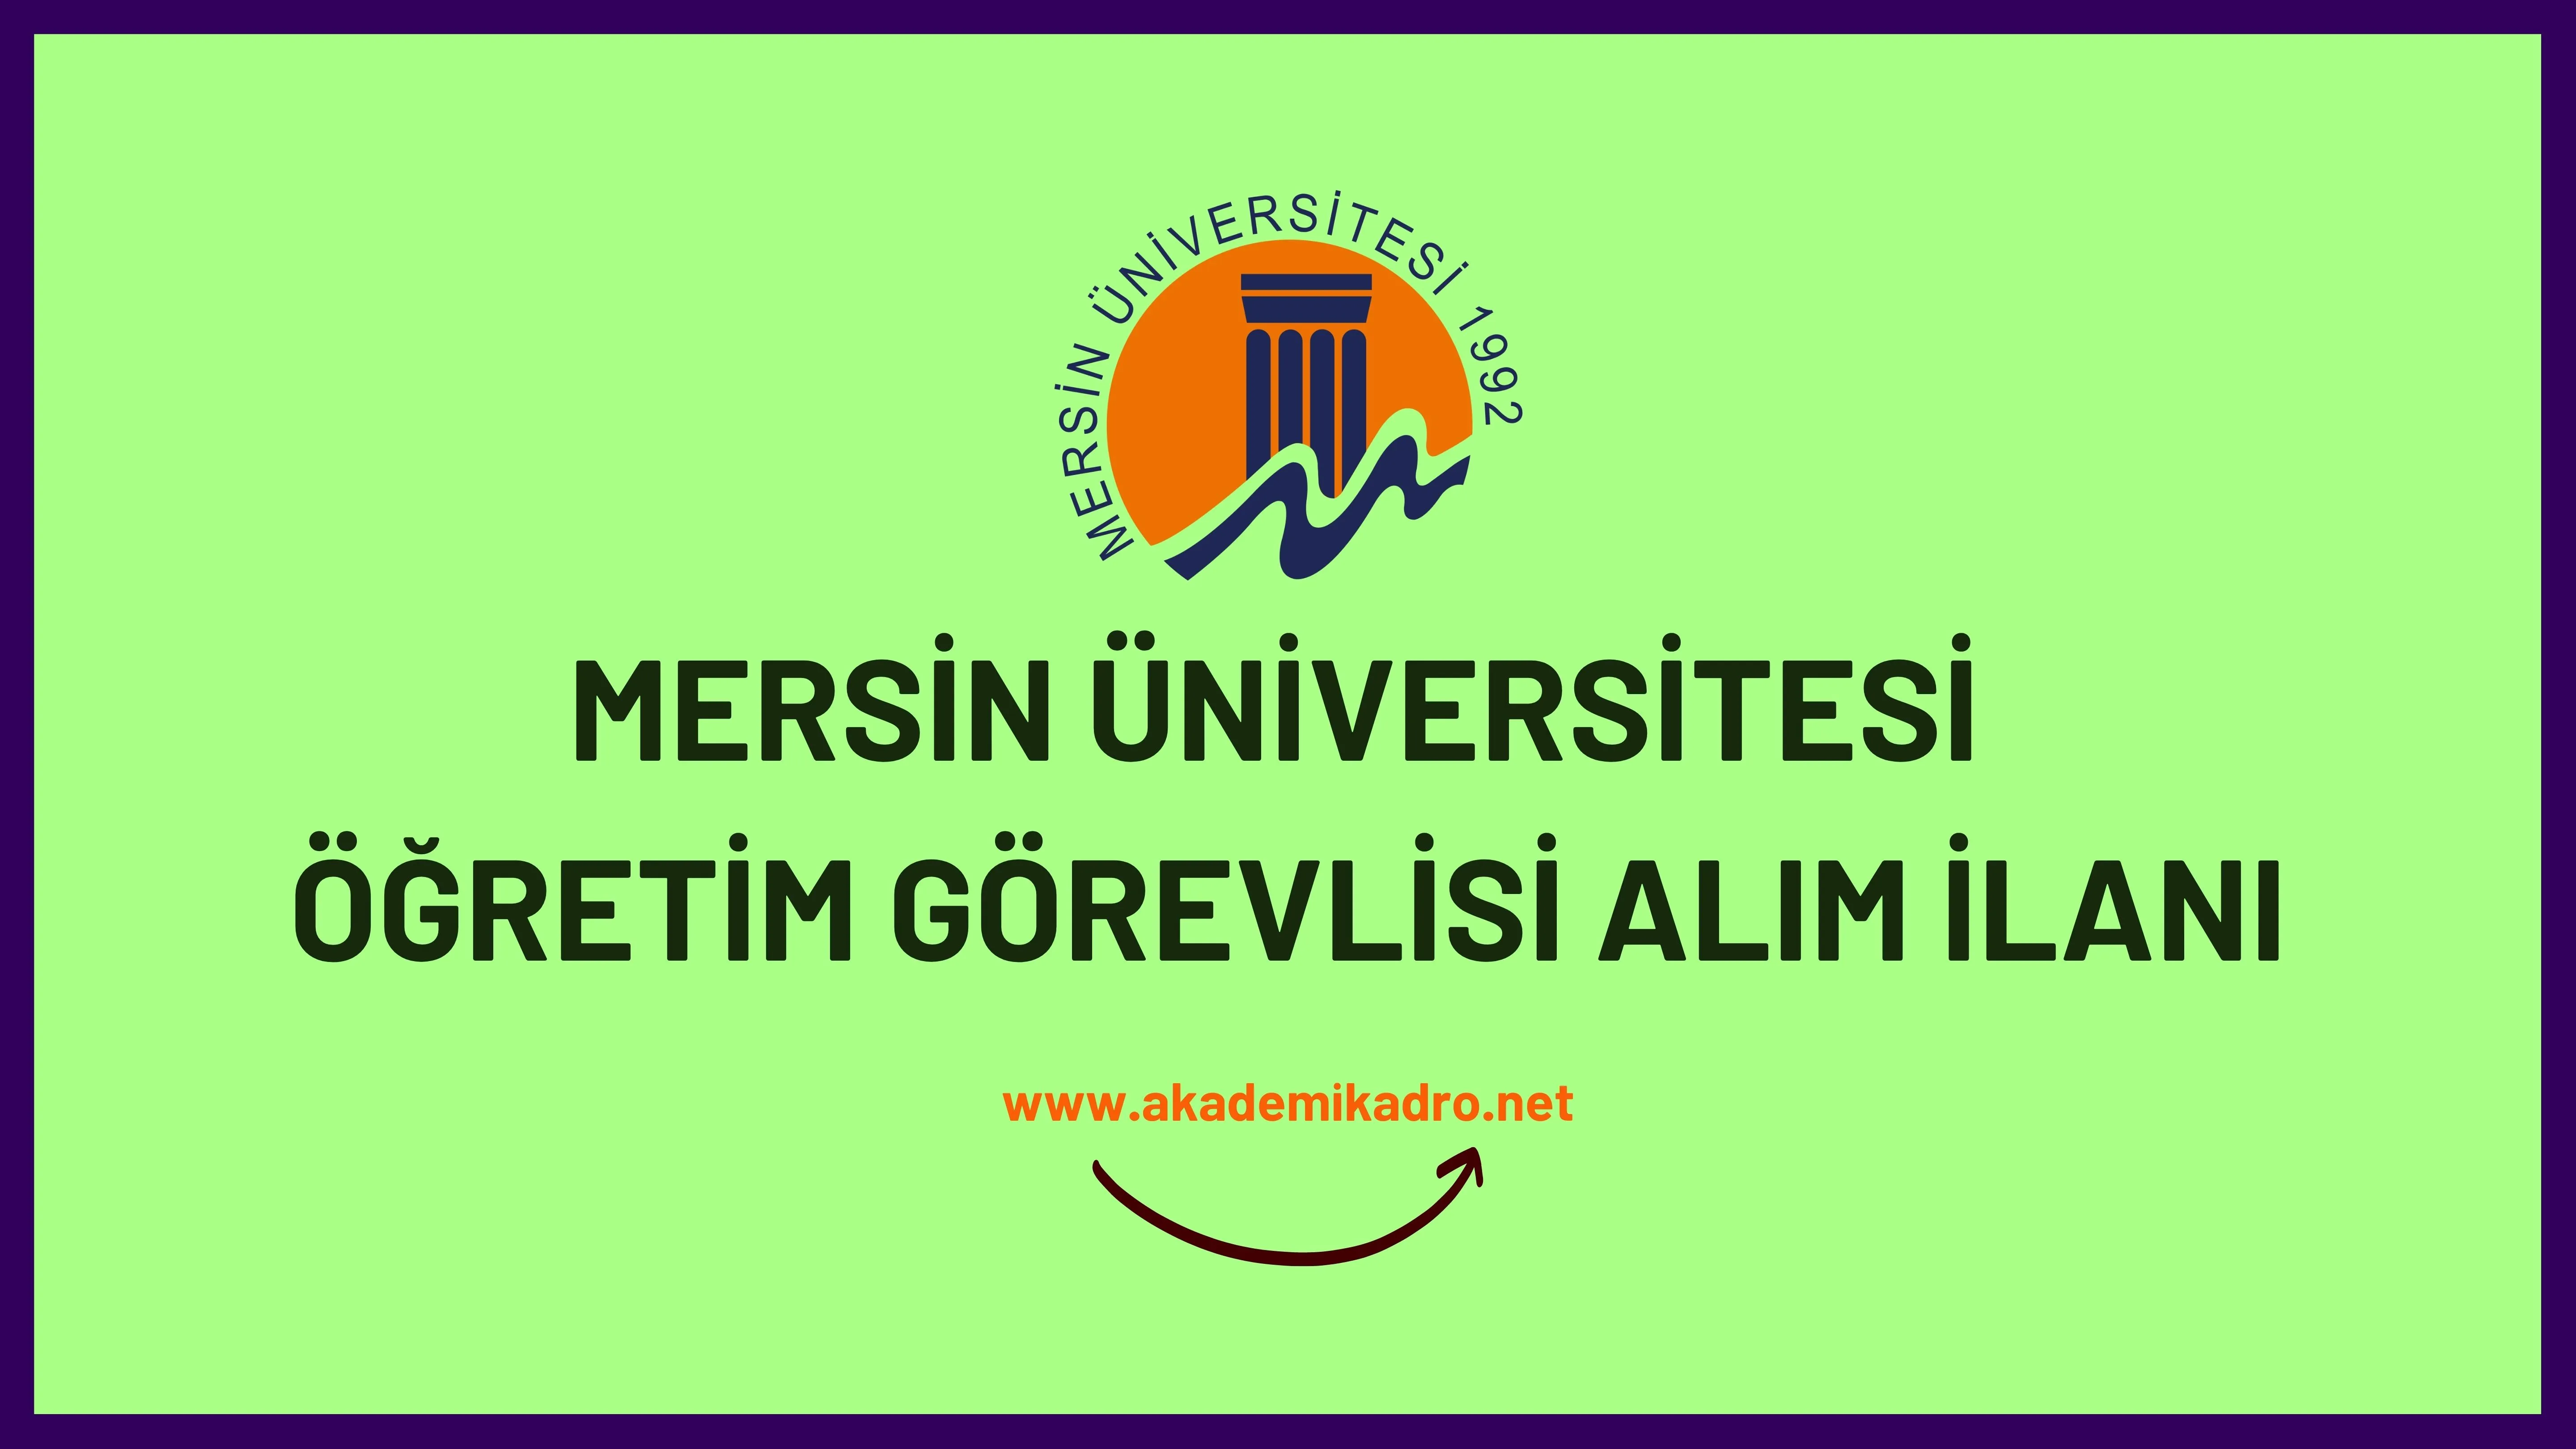 Mersin Üniversitesi 5 Öğretim Görevlisi alacaktır. Son başvuru tarihi 16 Kasım 2022.